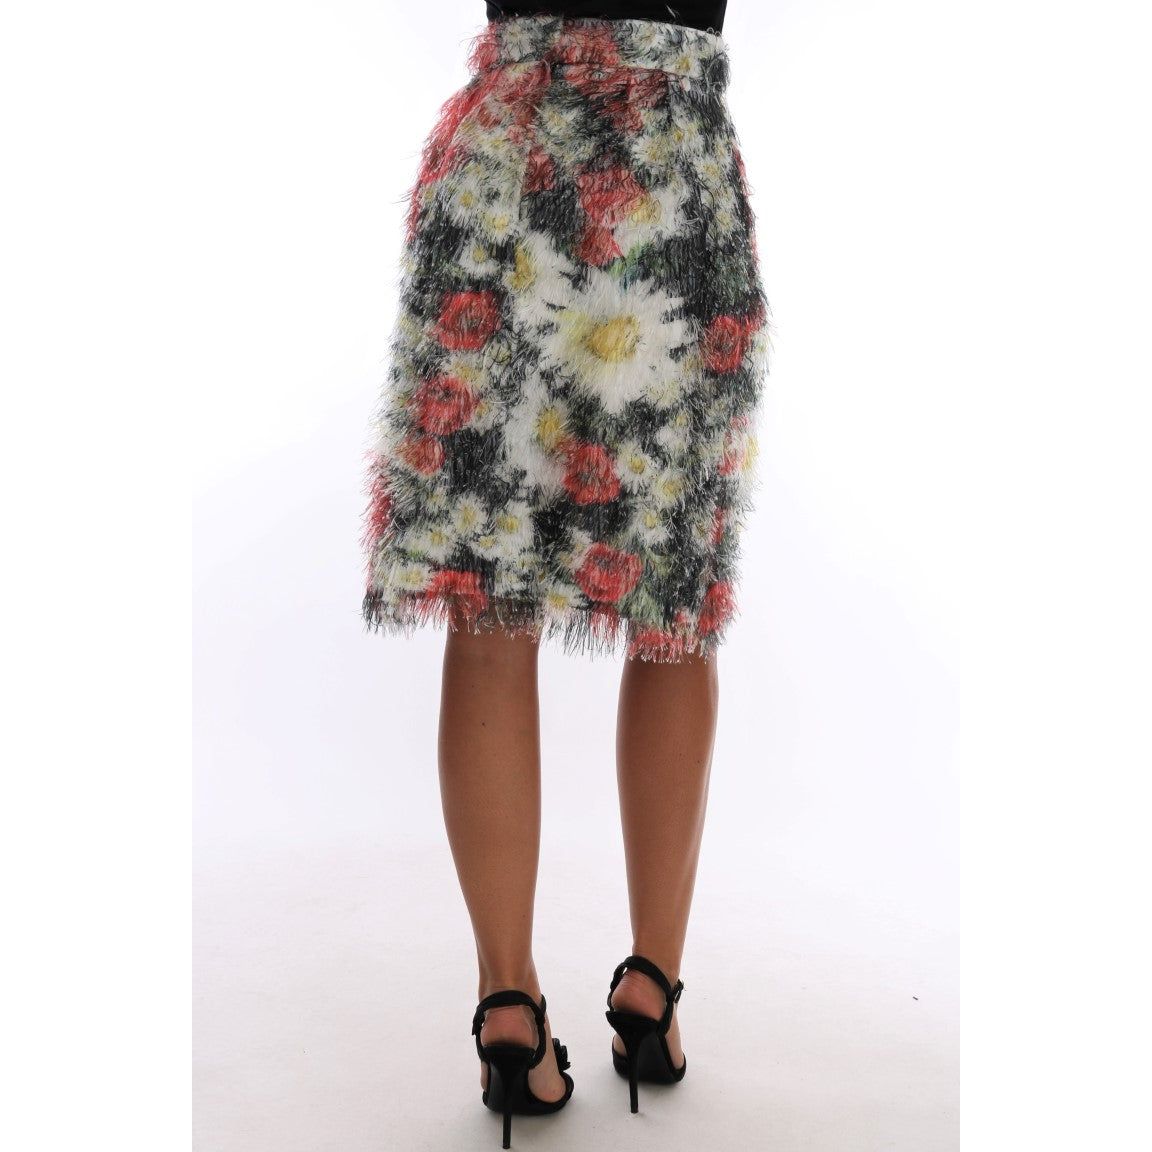 Dolce & Gabbana Floral Elegance Knee-Length Skirt floral-patterned-pencil-straight-skirt 464288-floral-patterned-pencil-straight-skirt-2.jpg